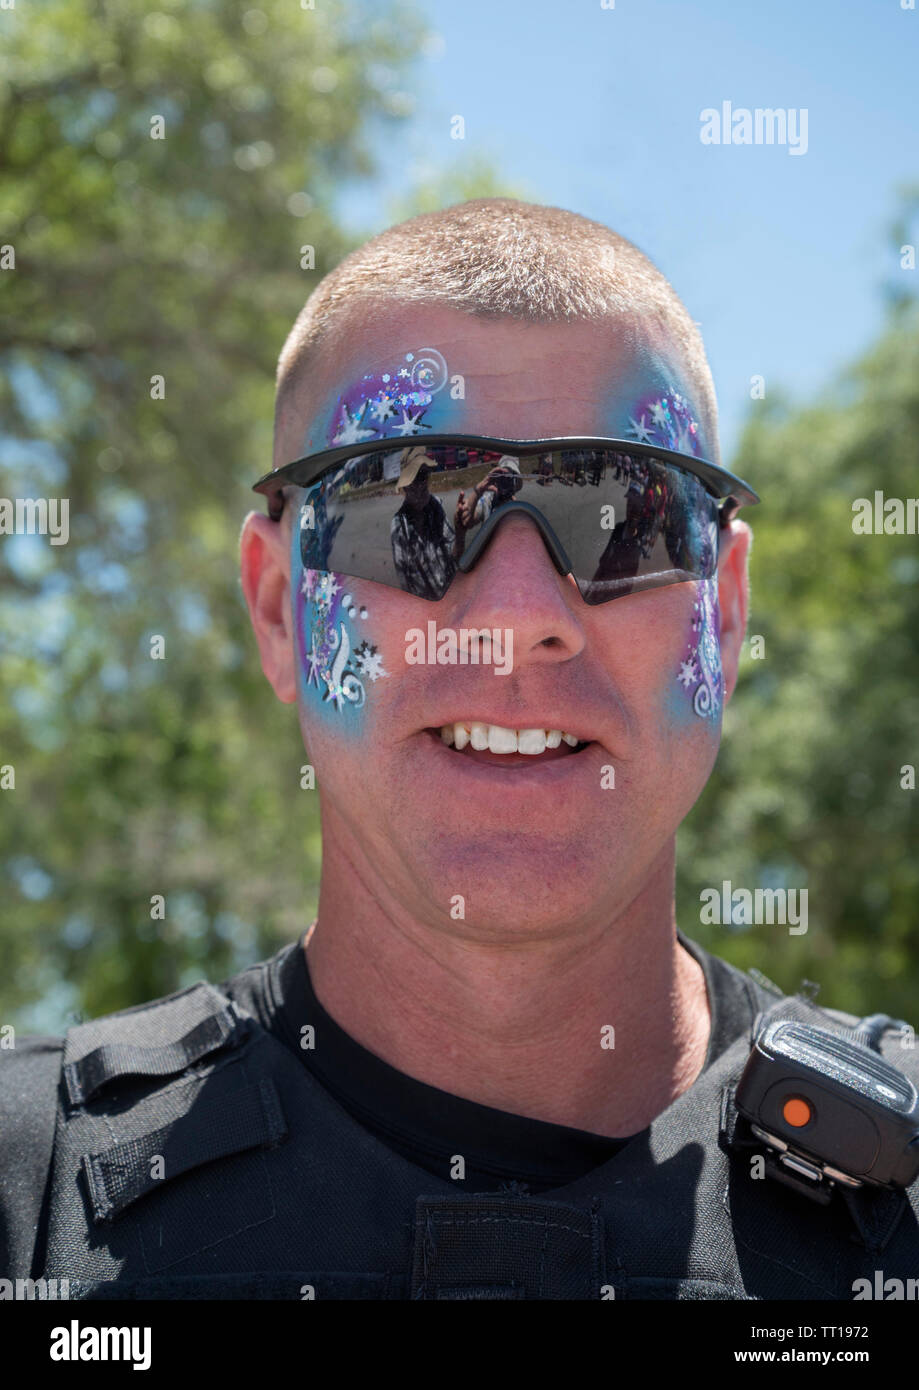 Pioneer Tage kleine Stadt jährliche Feier in North Central Florida. High Springs, FL Polizeioffizier mit Gesicht Farbe auf. Stockfoto